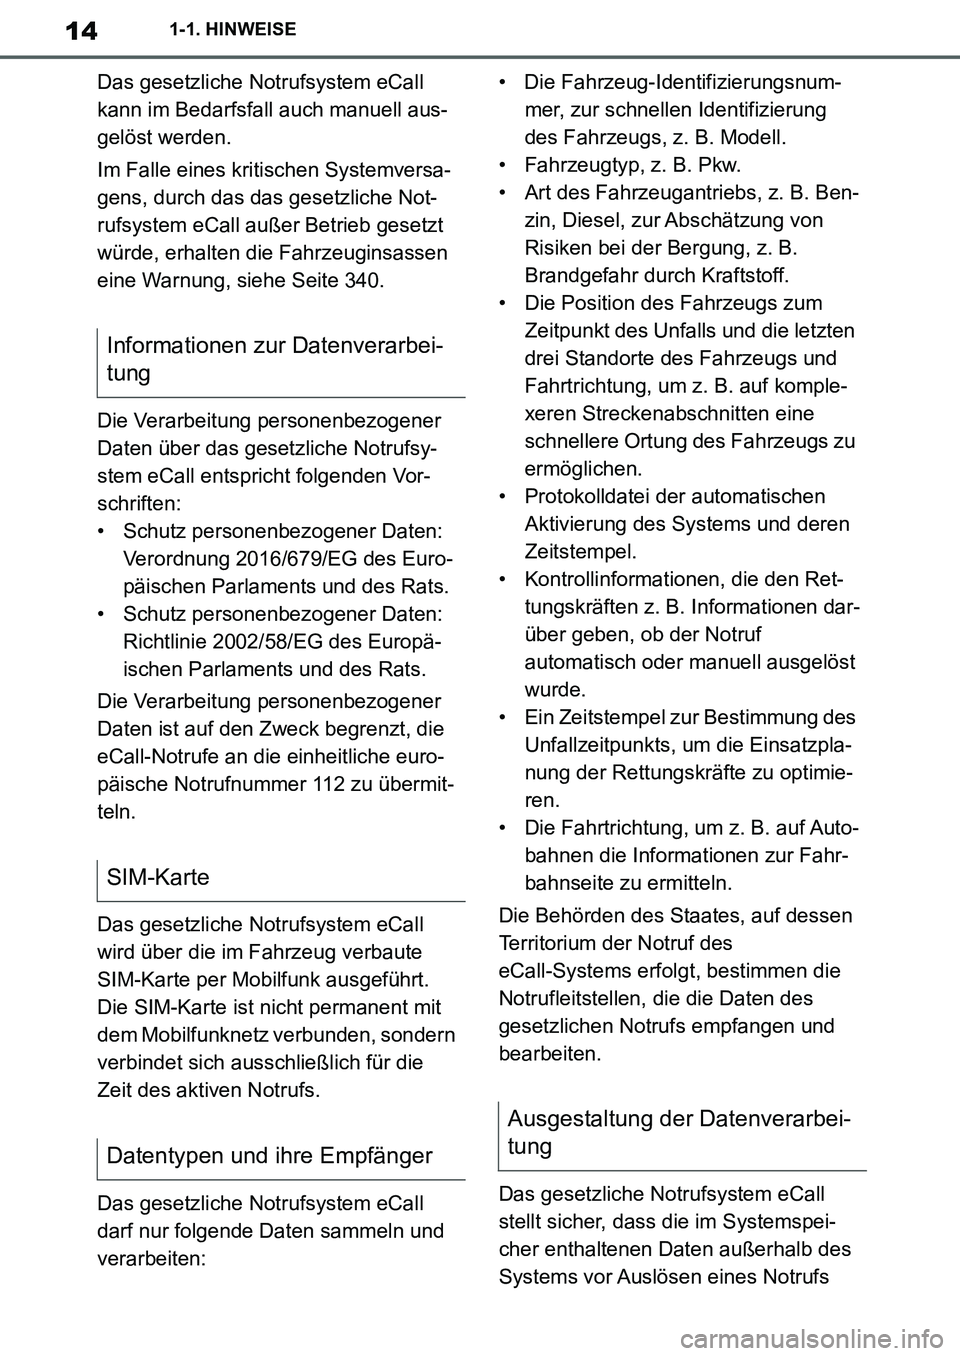 TOYOTA SUPRA 2020  Betriebsanleitungen (in German) 14
Supra Owners Manual_EM
1-1. HINWEISE
Das gesetzliche Notrufsystem eCall 
kann im Bedarfsfall auch manuell aus-
gelöst werden.
Im Falle eines kritischen Systemversa-
gens, durch das das gesetzlich